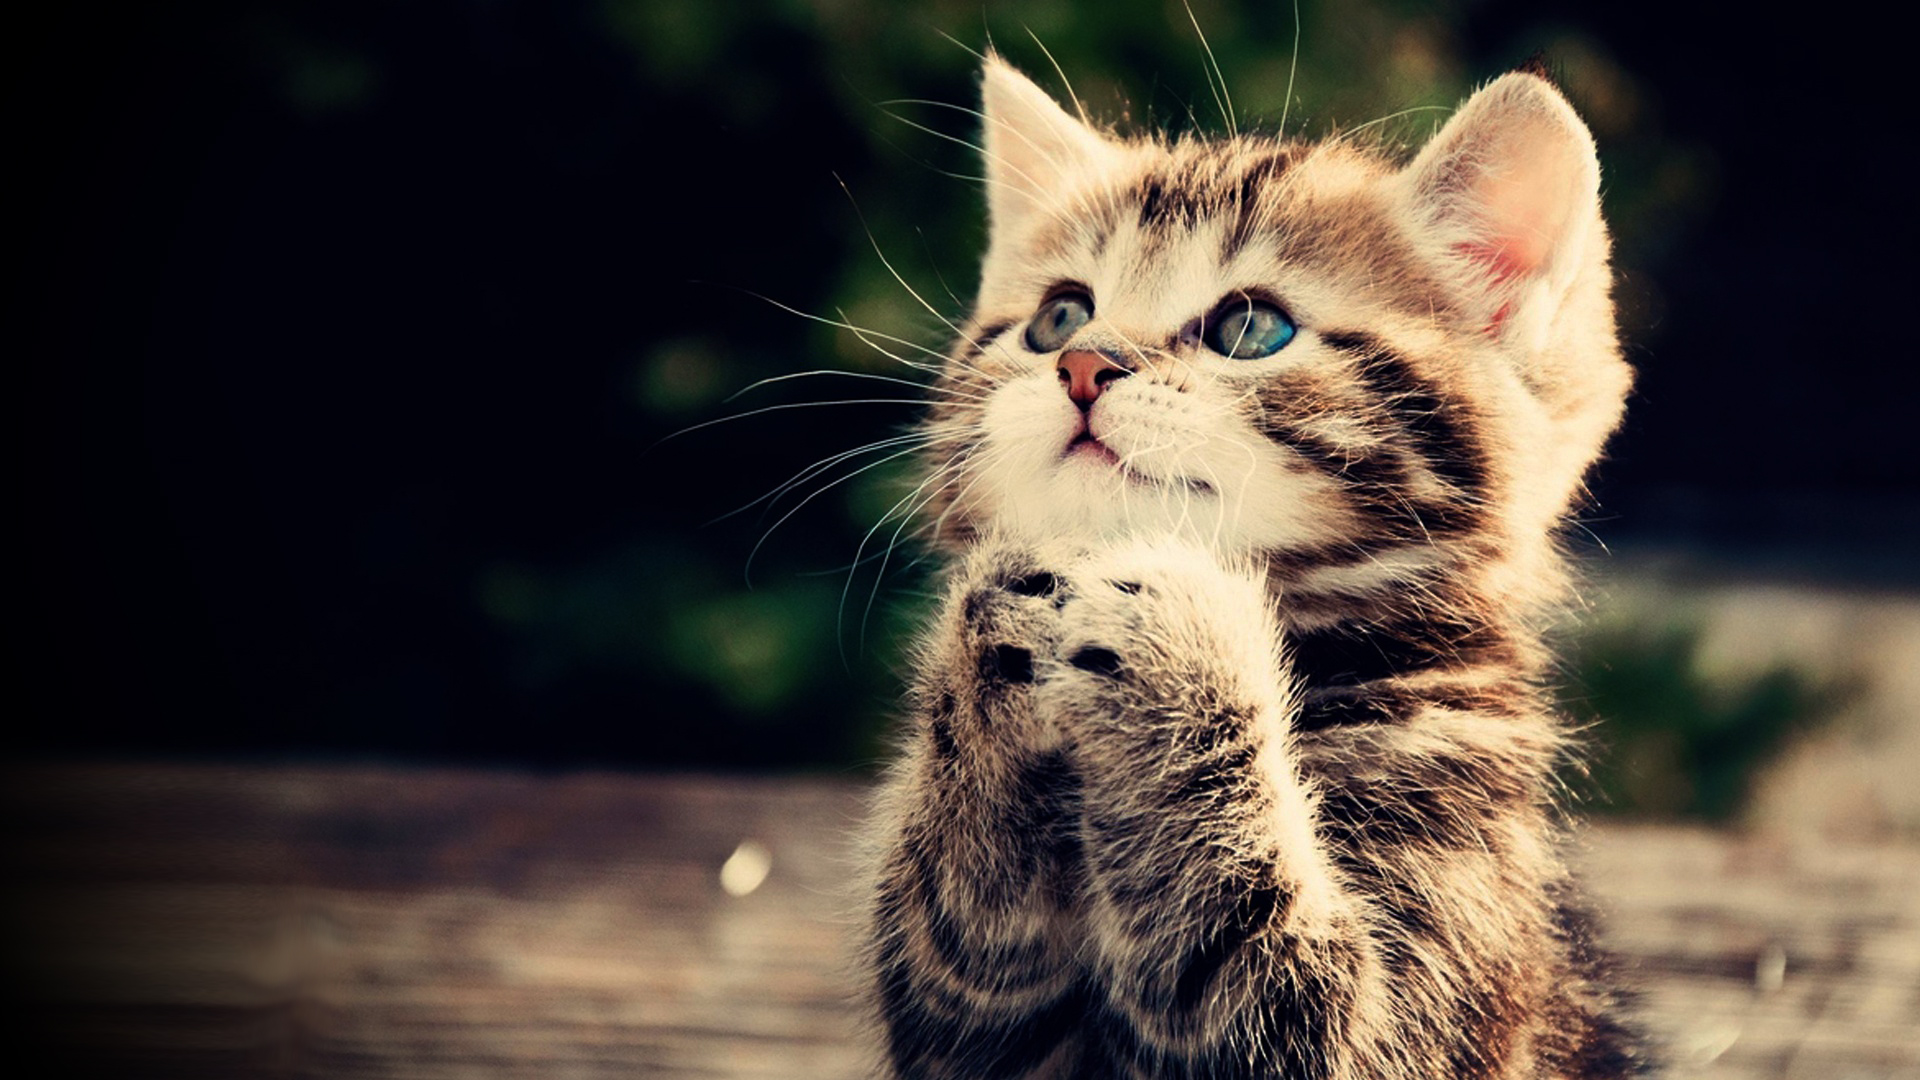 HD Wallpaper Praying Kitten Cute Animal Picture 1080p